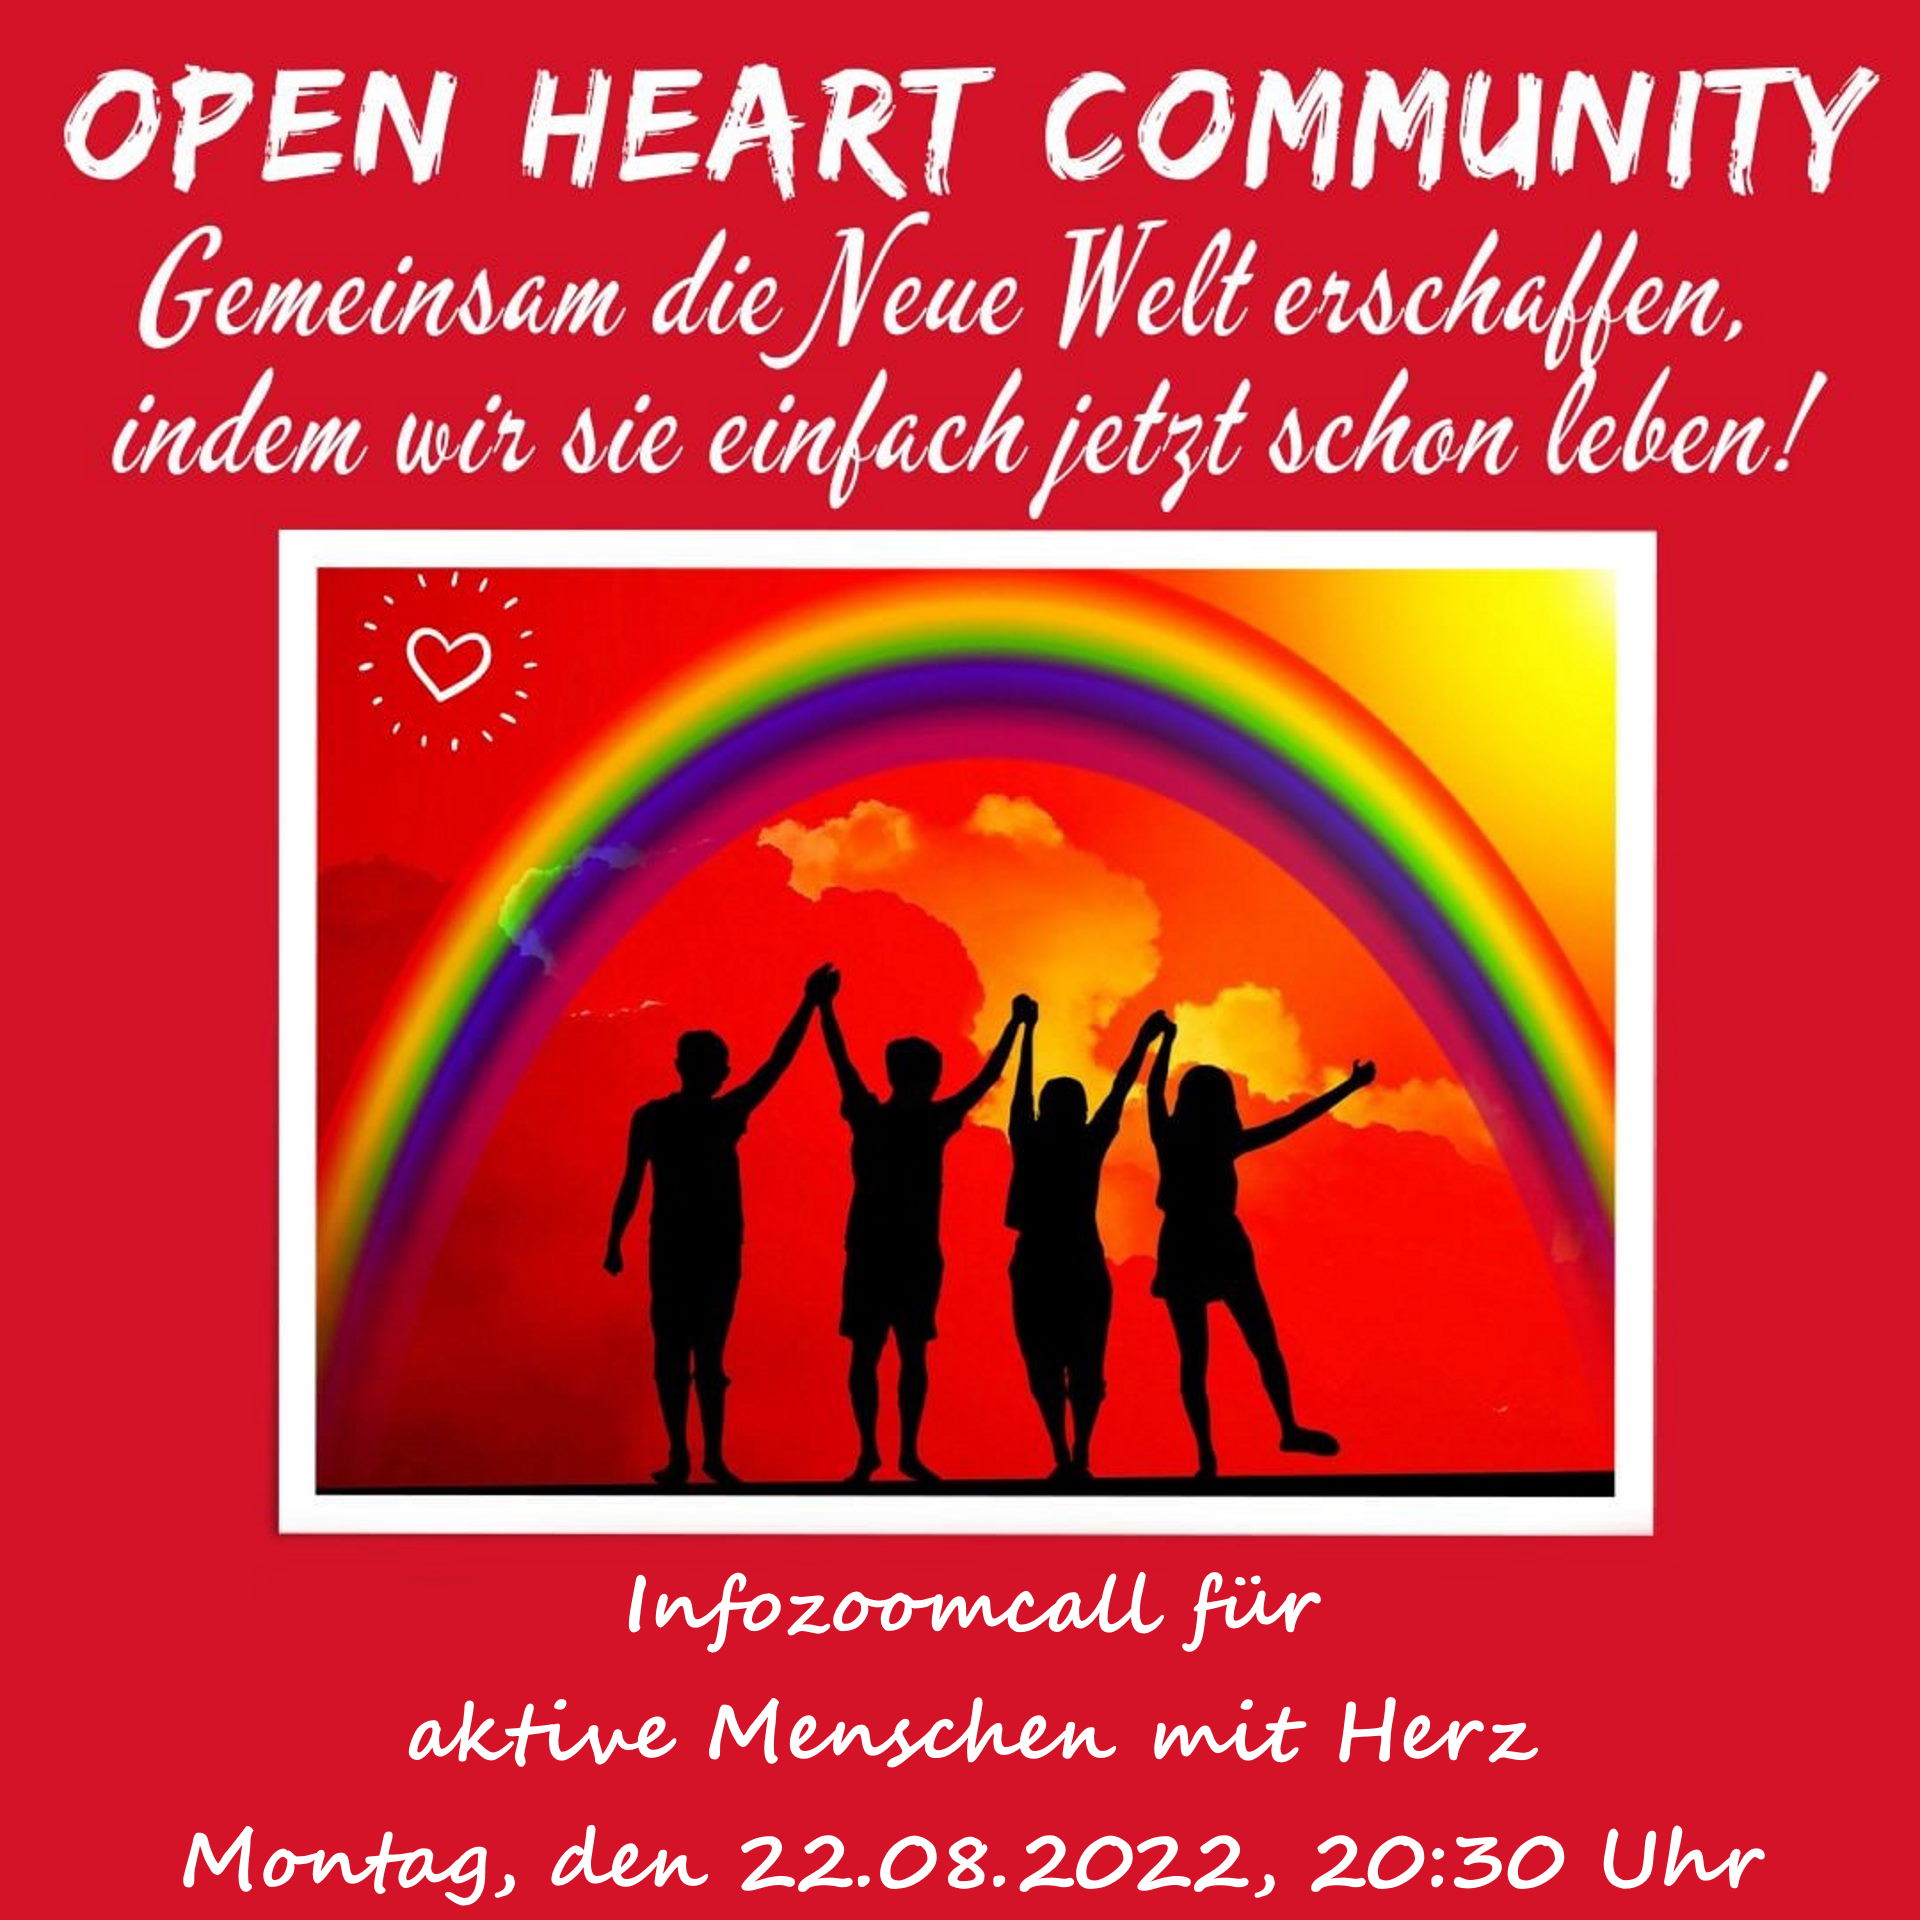 Open Heart Community